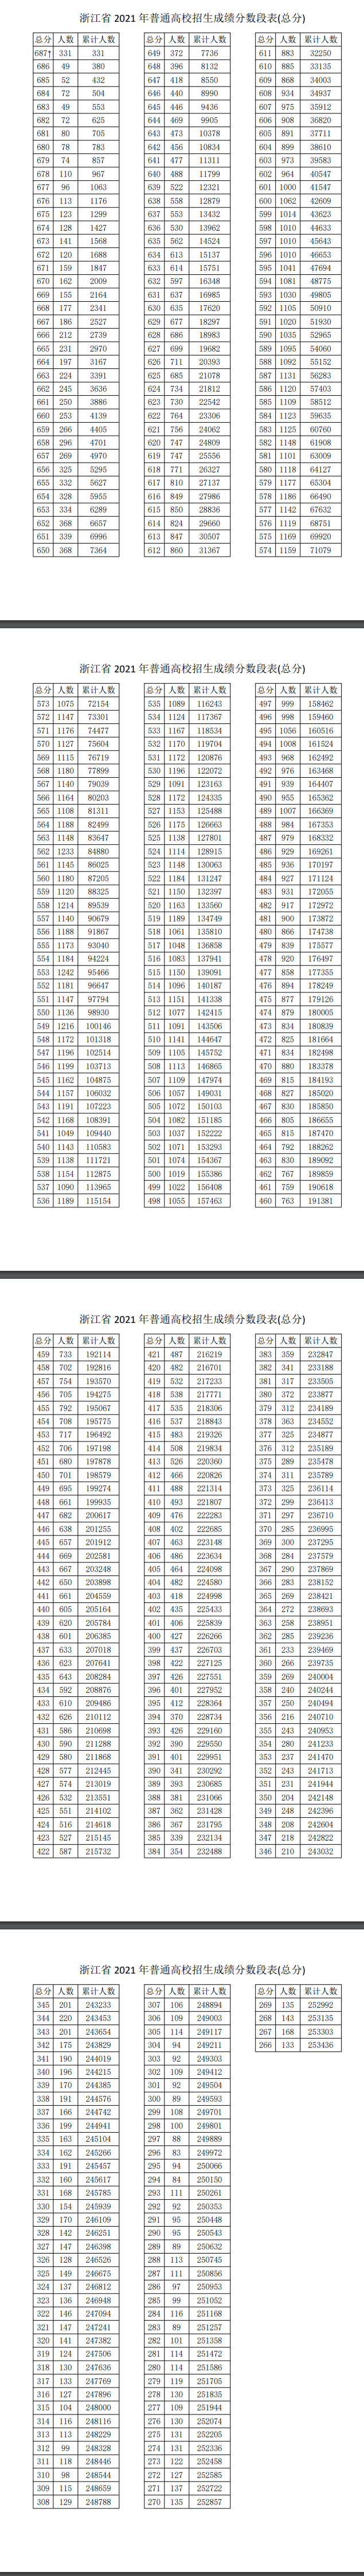 浙江2022年高考一分一段表成绩排名